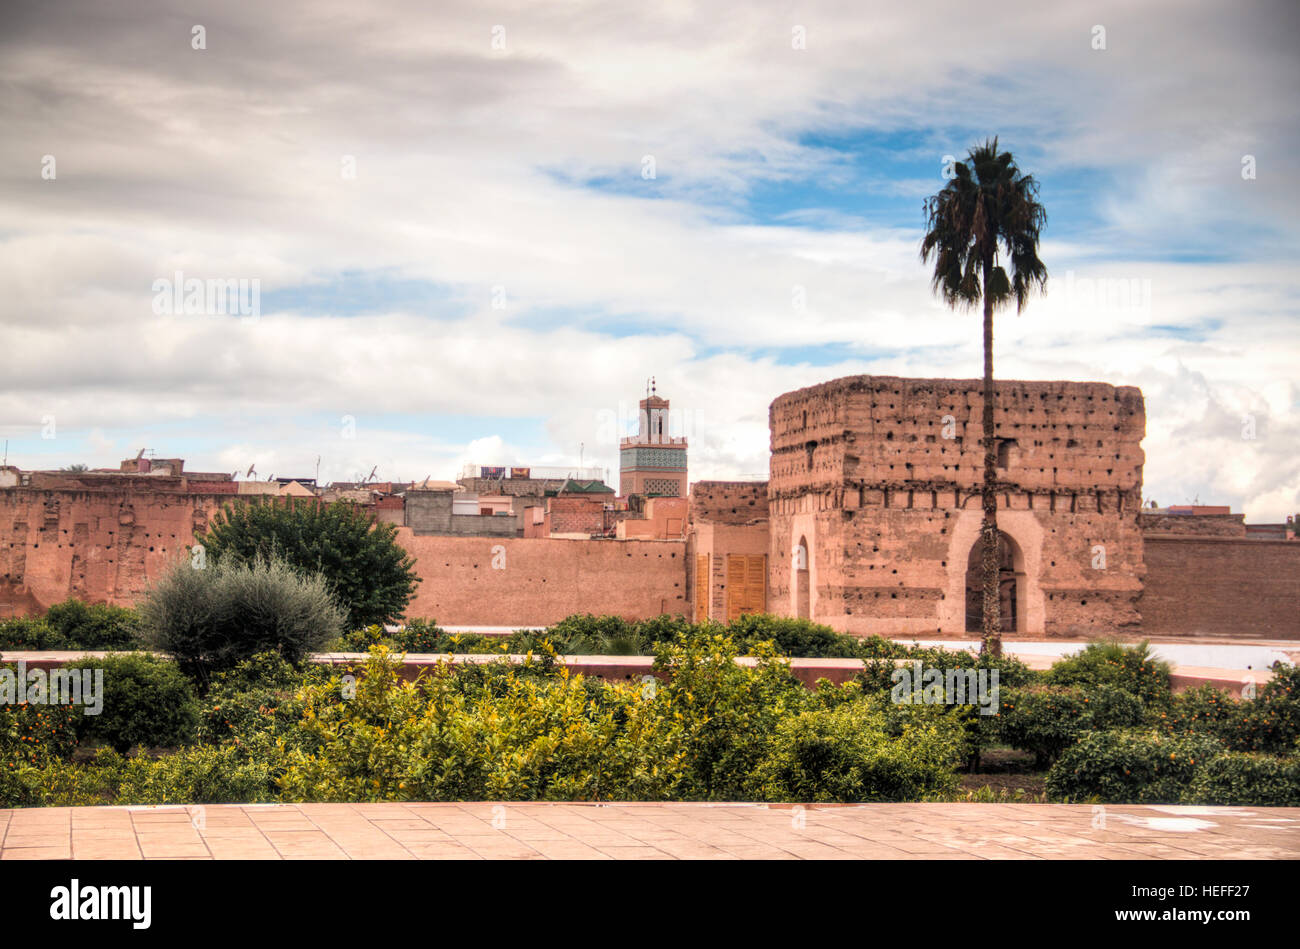 À l'intérieur de l'ancien palais de Bab Agnaou, l'une des principales attractions de Marrakech en Morocoo Banque D'Images